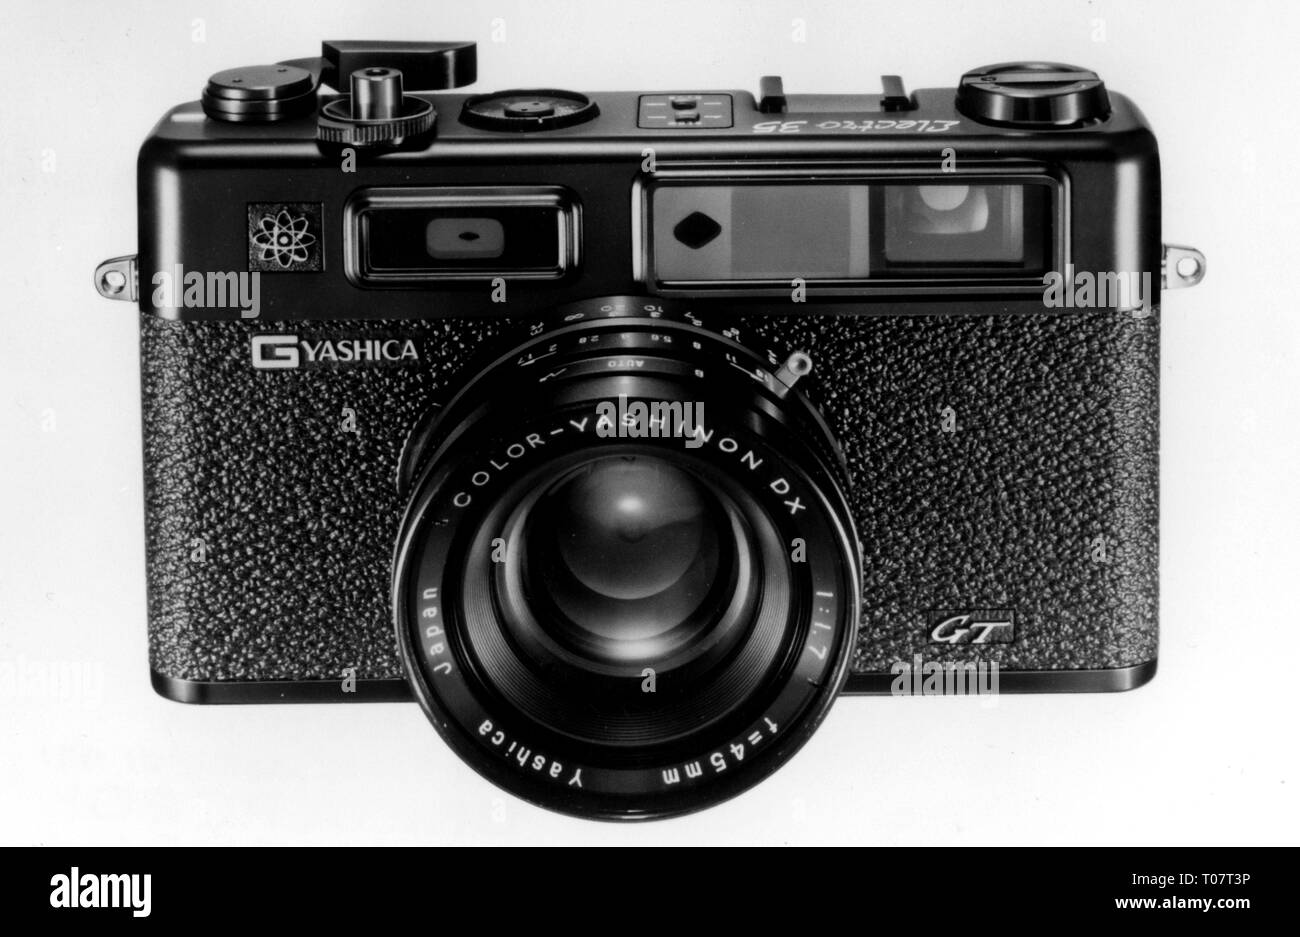 Fotografía, cámaras, cámaras compactas del fabricante japonés Yashica, modelo 'Electro 35 GT', 1970, Additional-Rights-Clearance-Info-Not-Available Foto de stock